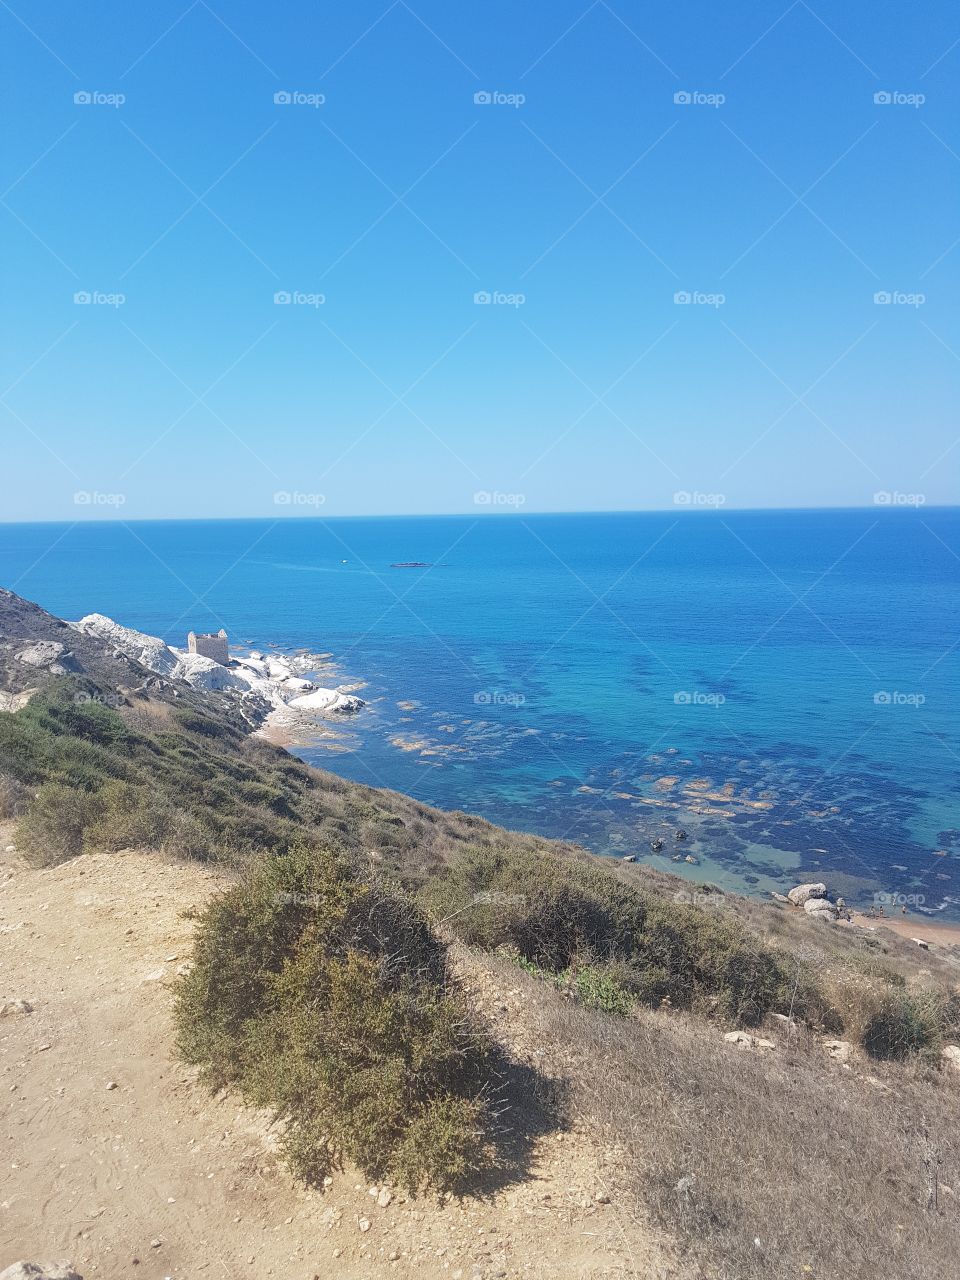 Sea of Sicily